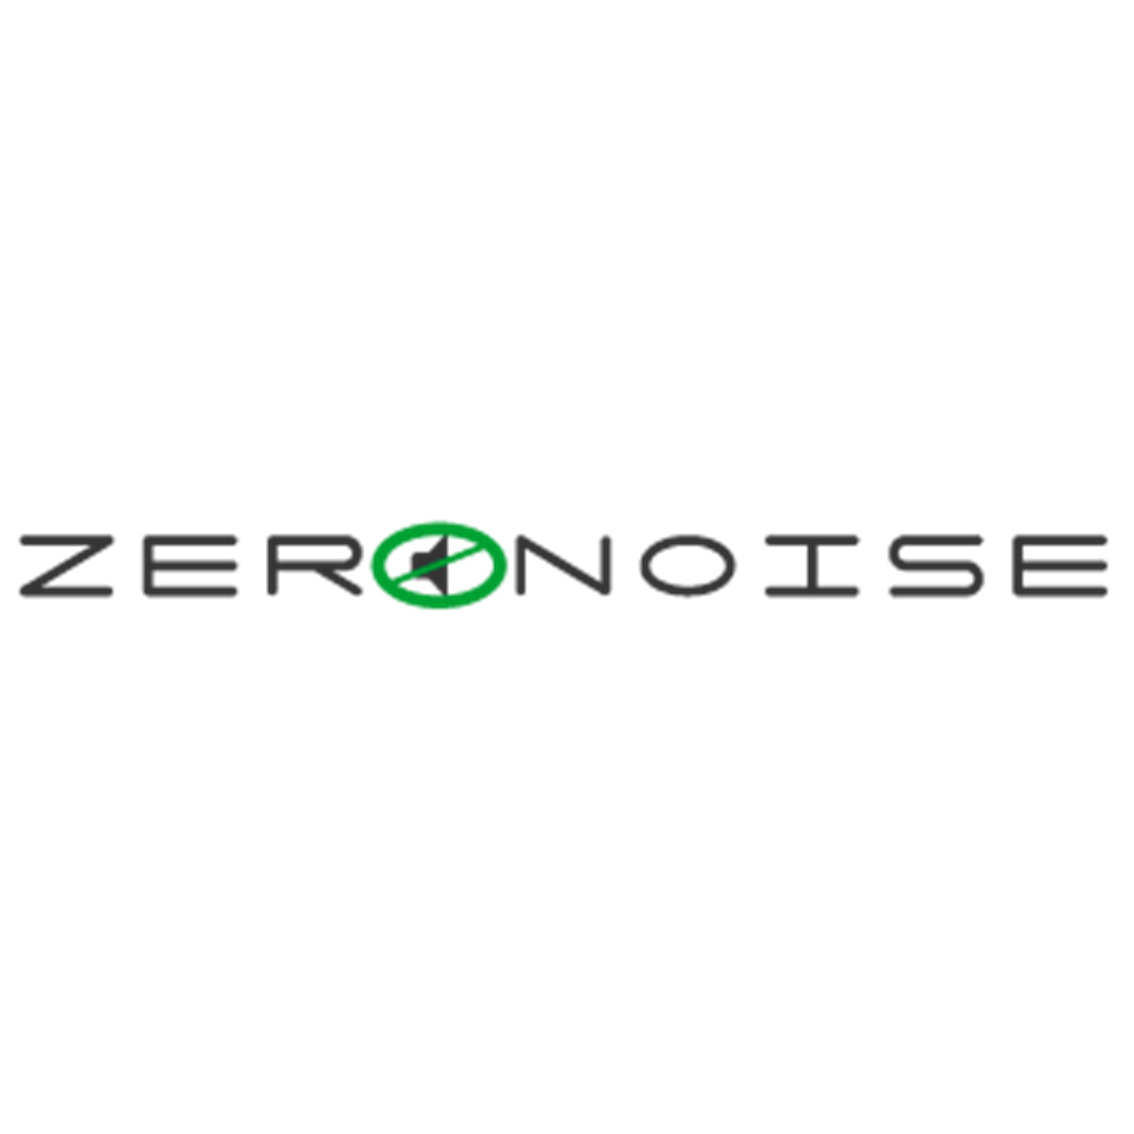 Zeronoise